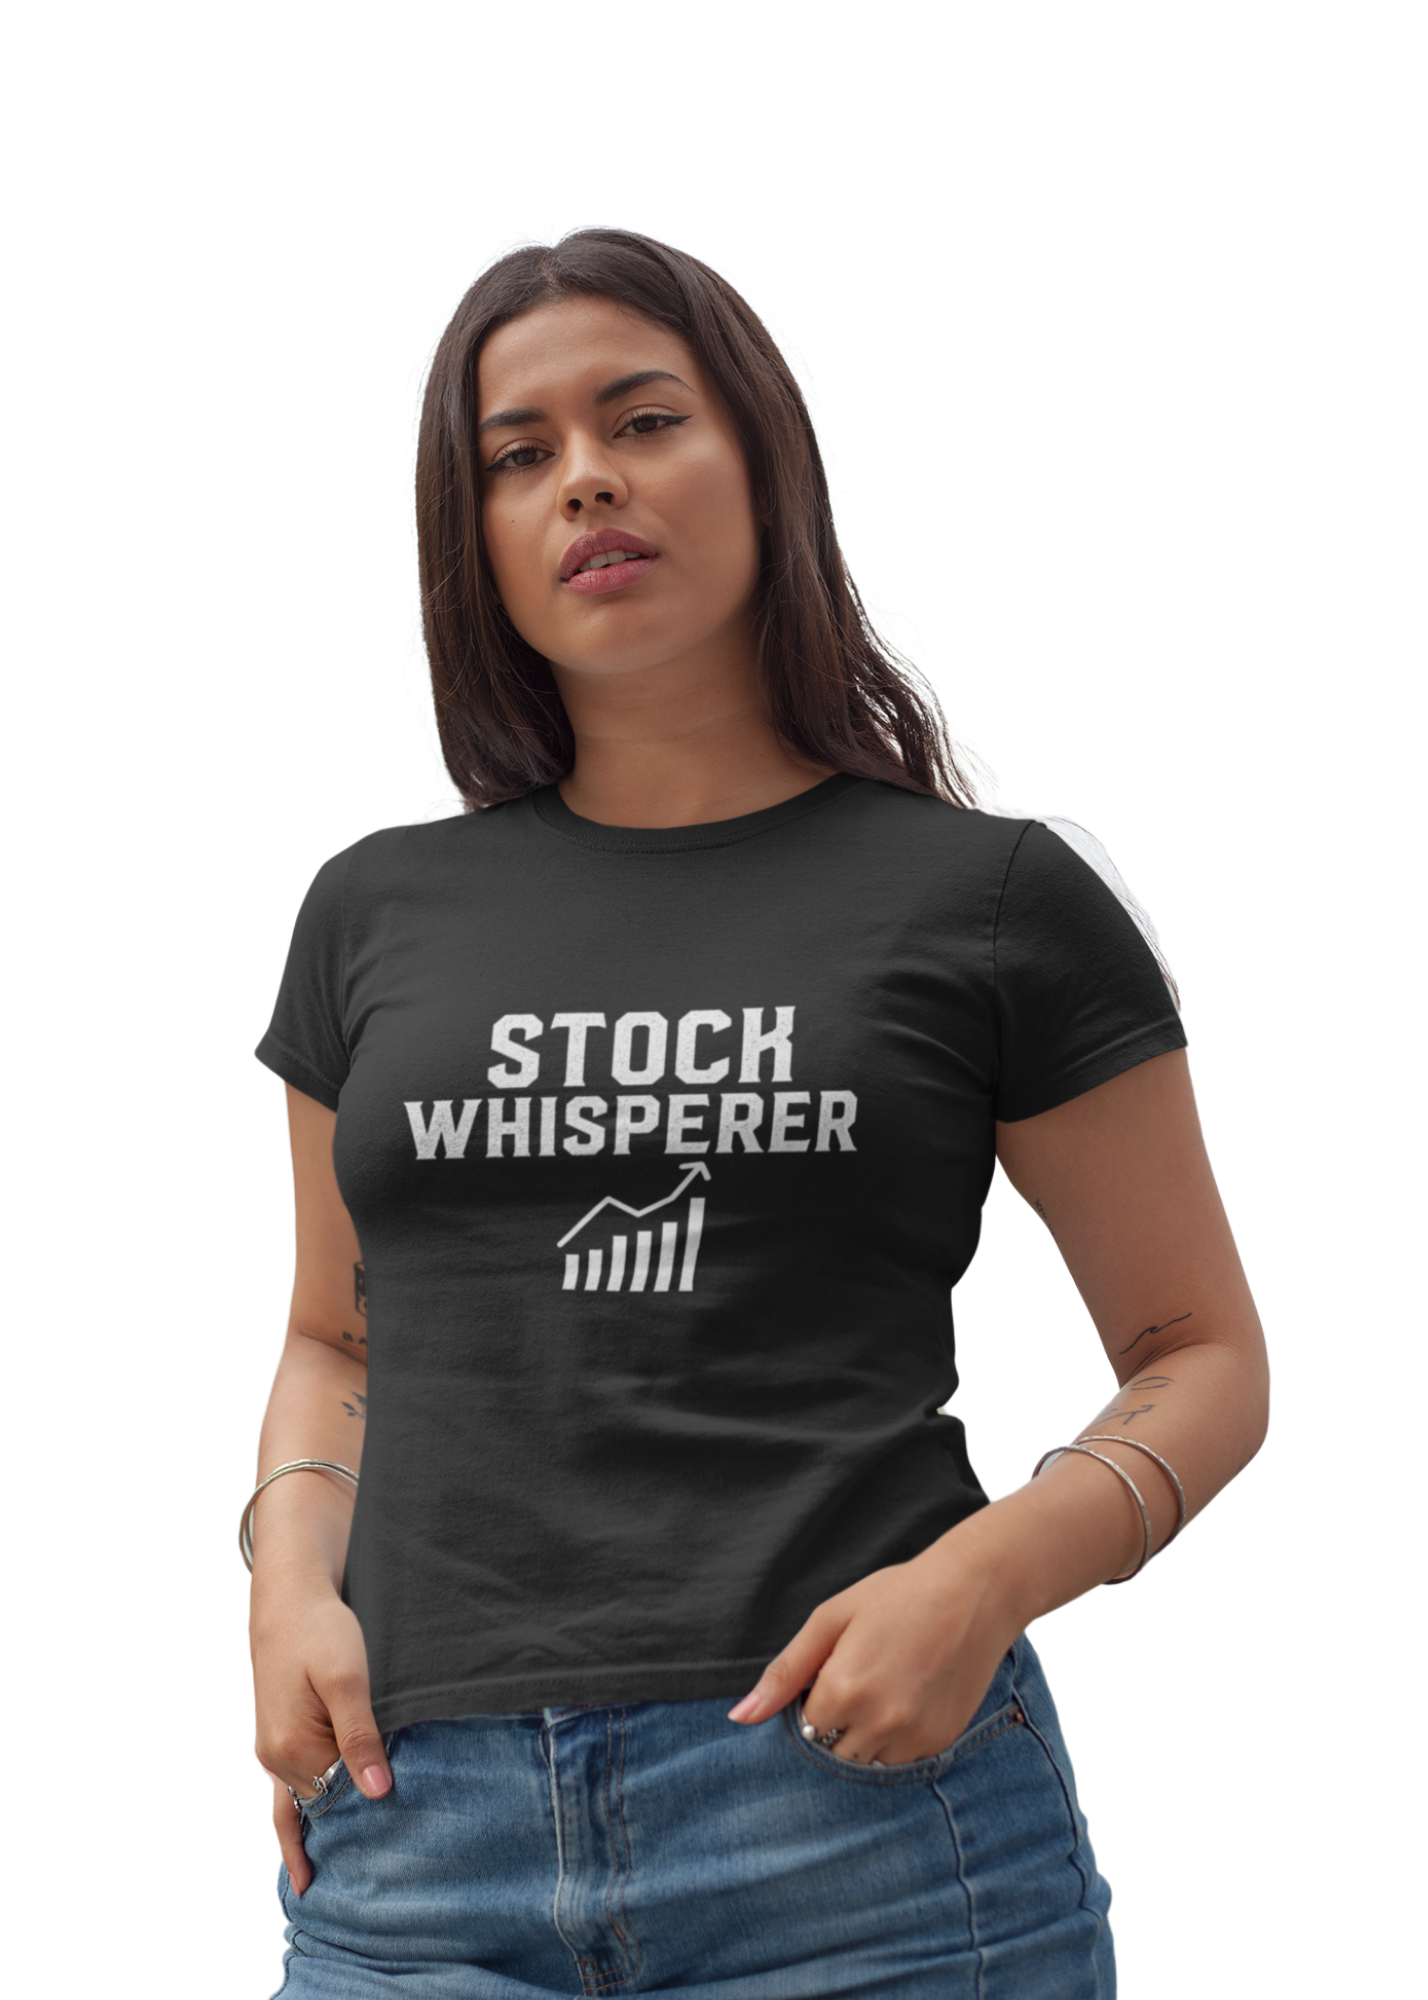 STOCK WHISPERER WOMEN'S SHORT SLEEVE T-SHIRT